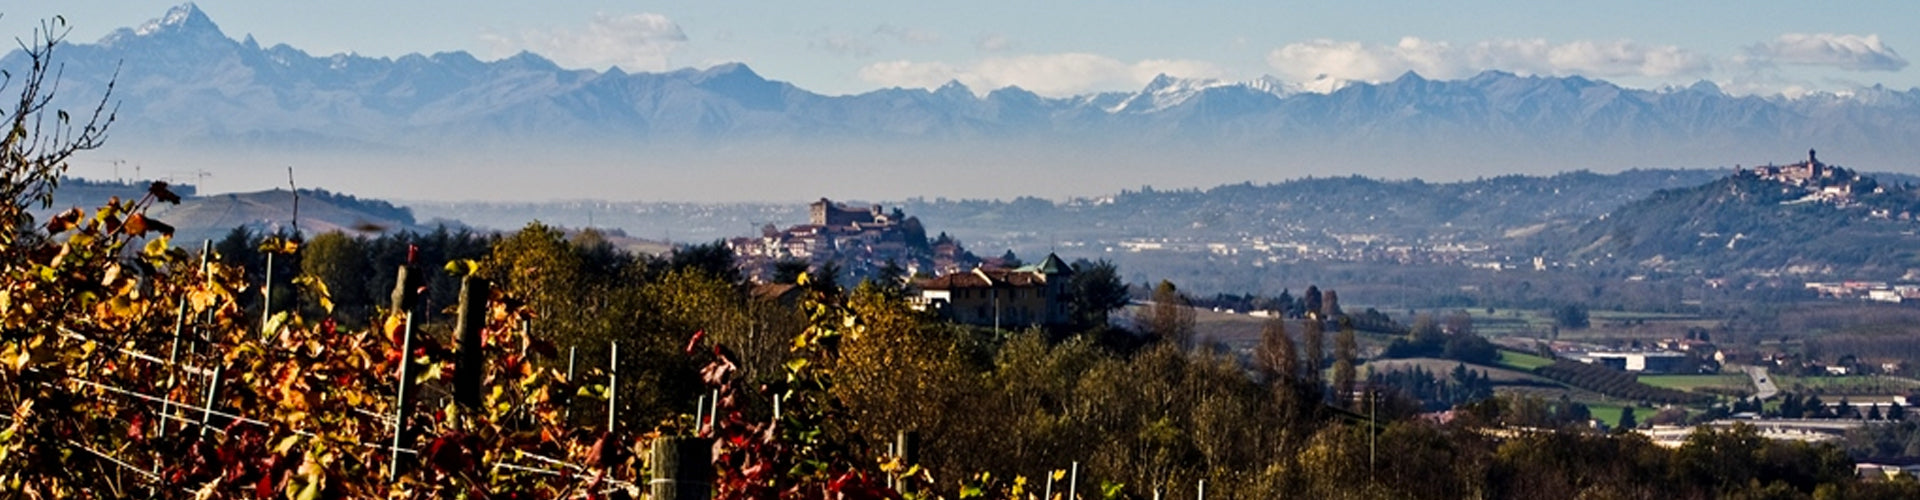 Barolo Vineyards Piemonte in Italy